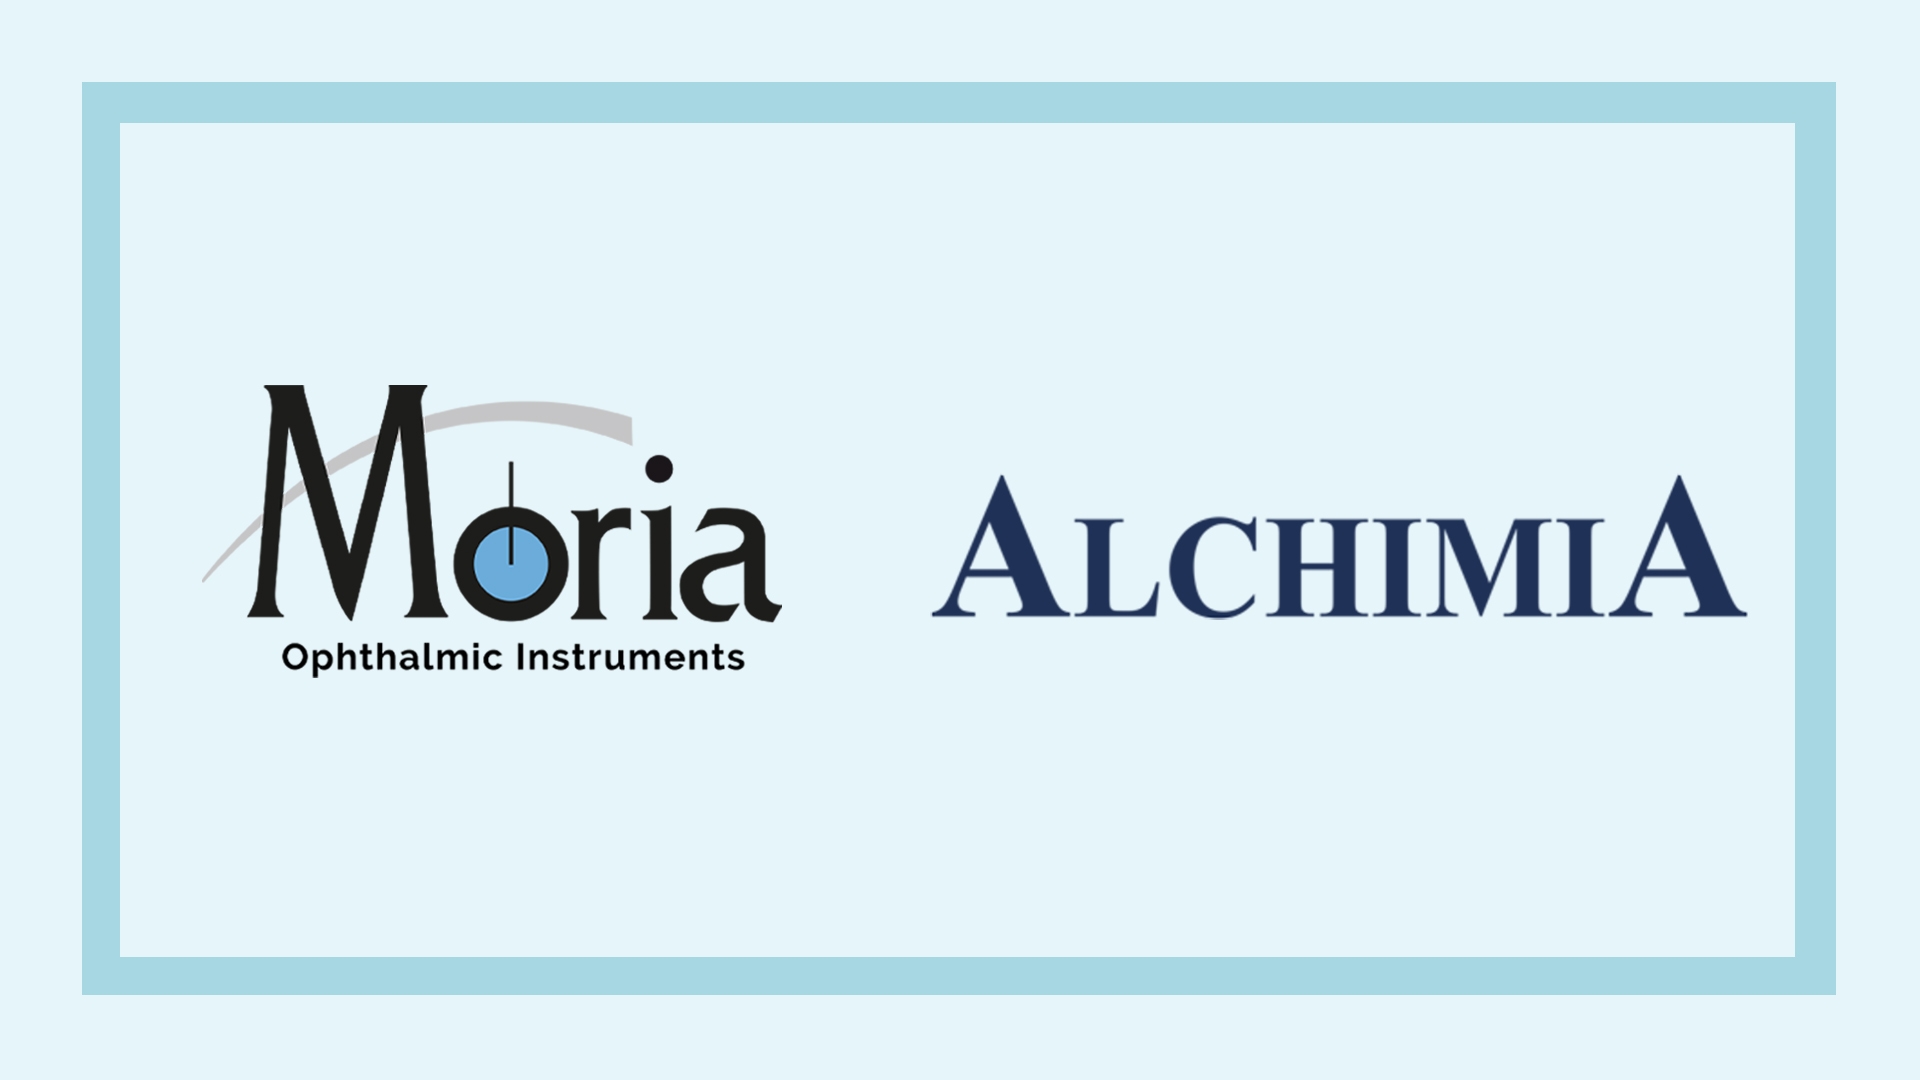 Moria acquiert ALCHIMIA SRL et étend sa présence en chirurgie oculaire